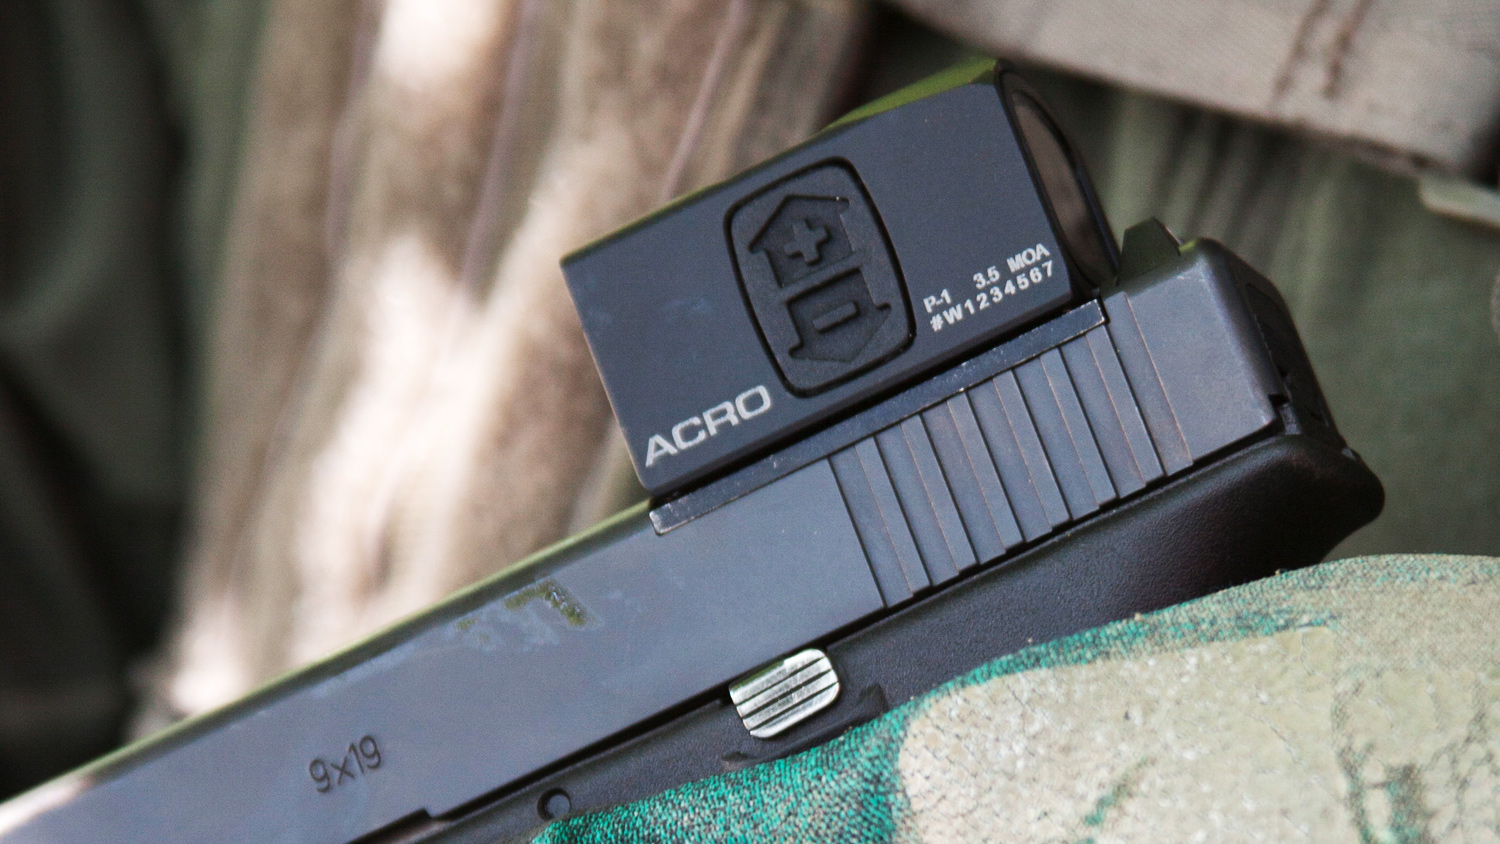 ACRO P-1 on Glock pistol